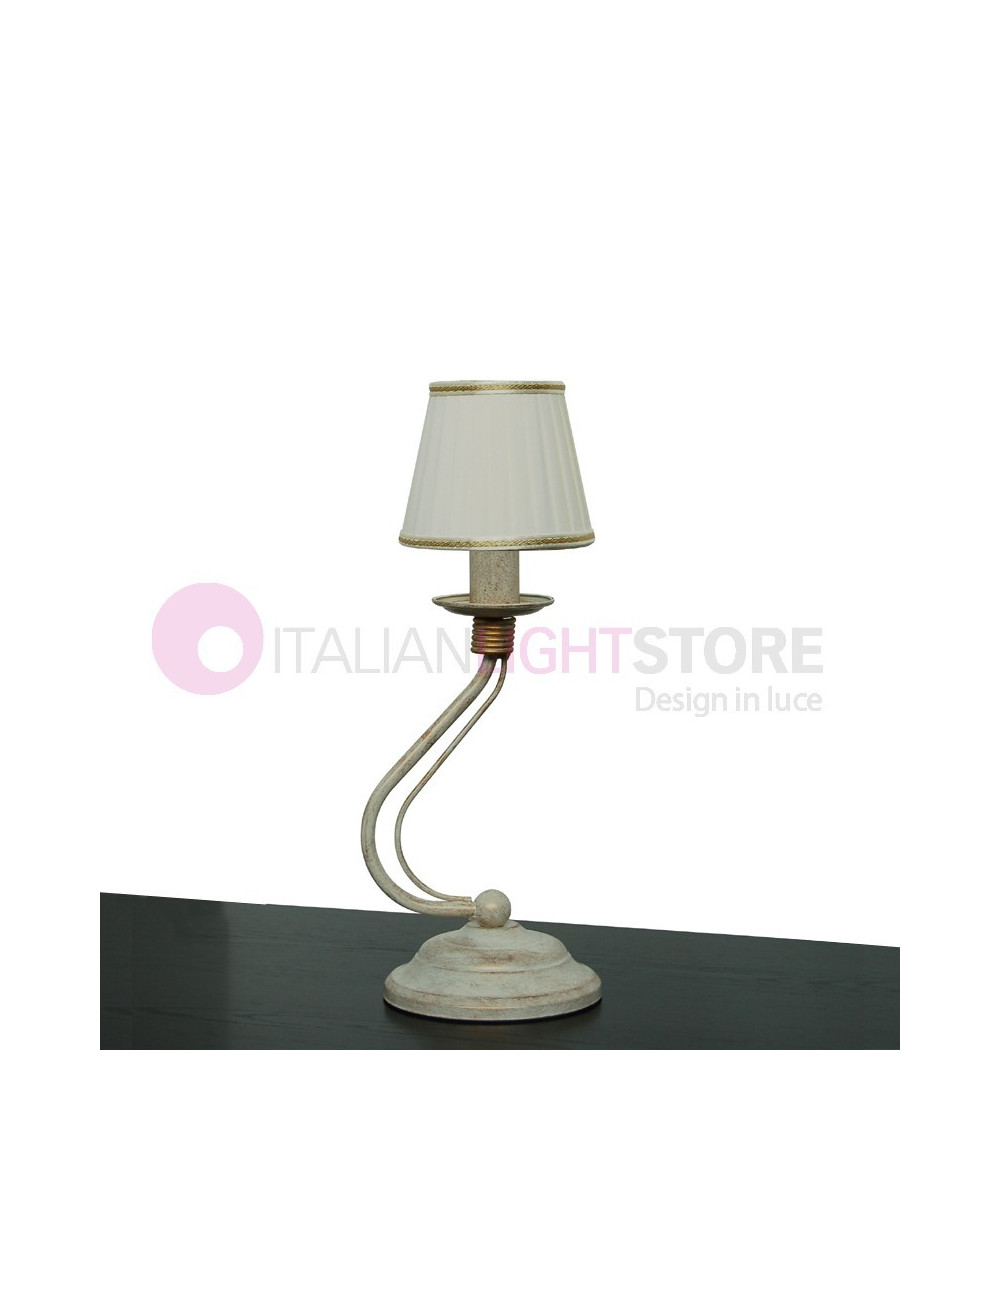 Flämische rustikale Tischlampe im klassischen Stil mit elfenbeinfarbenem Seidenlampenschirm